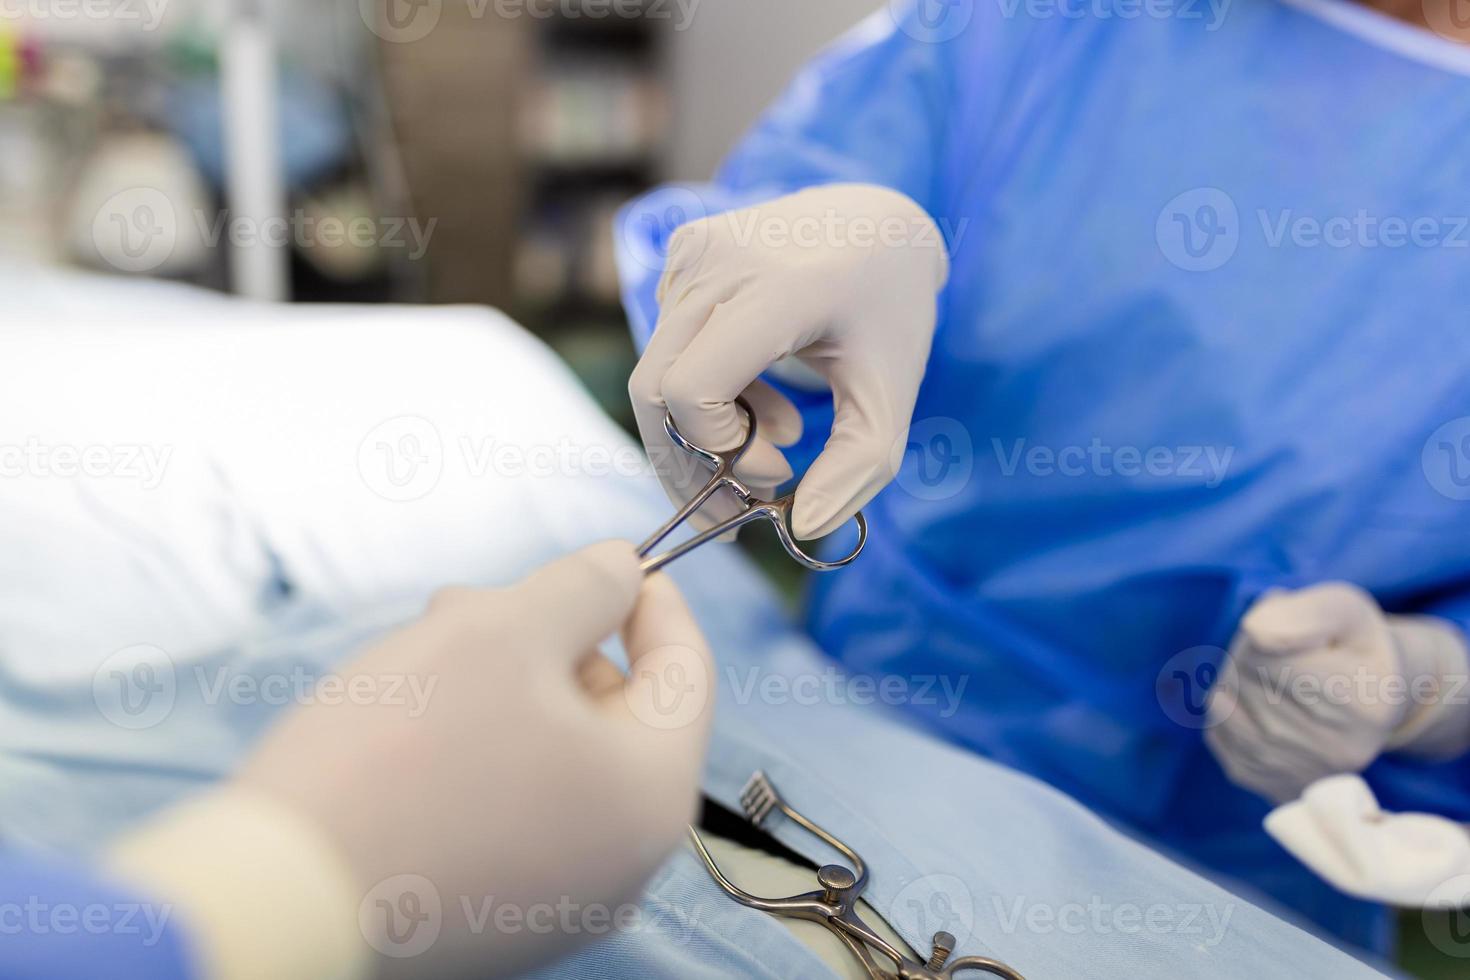 disparado en el quirófano, el asistente entrega instrumentos a los cirujanos durante la operación. los cirujanos realizan la operación. médicos profesionales que realizan cirugía. foto